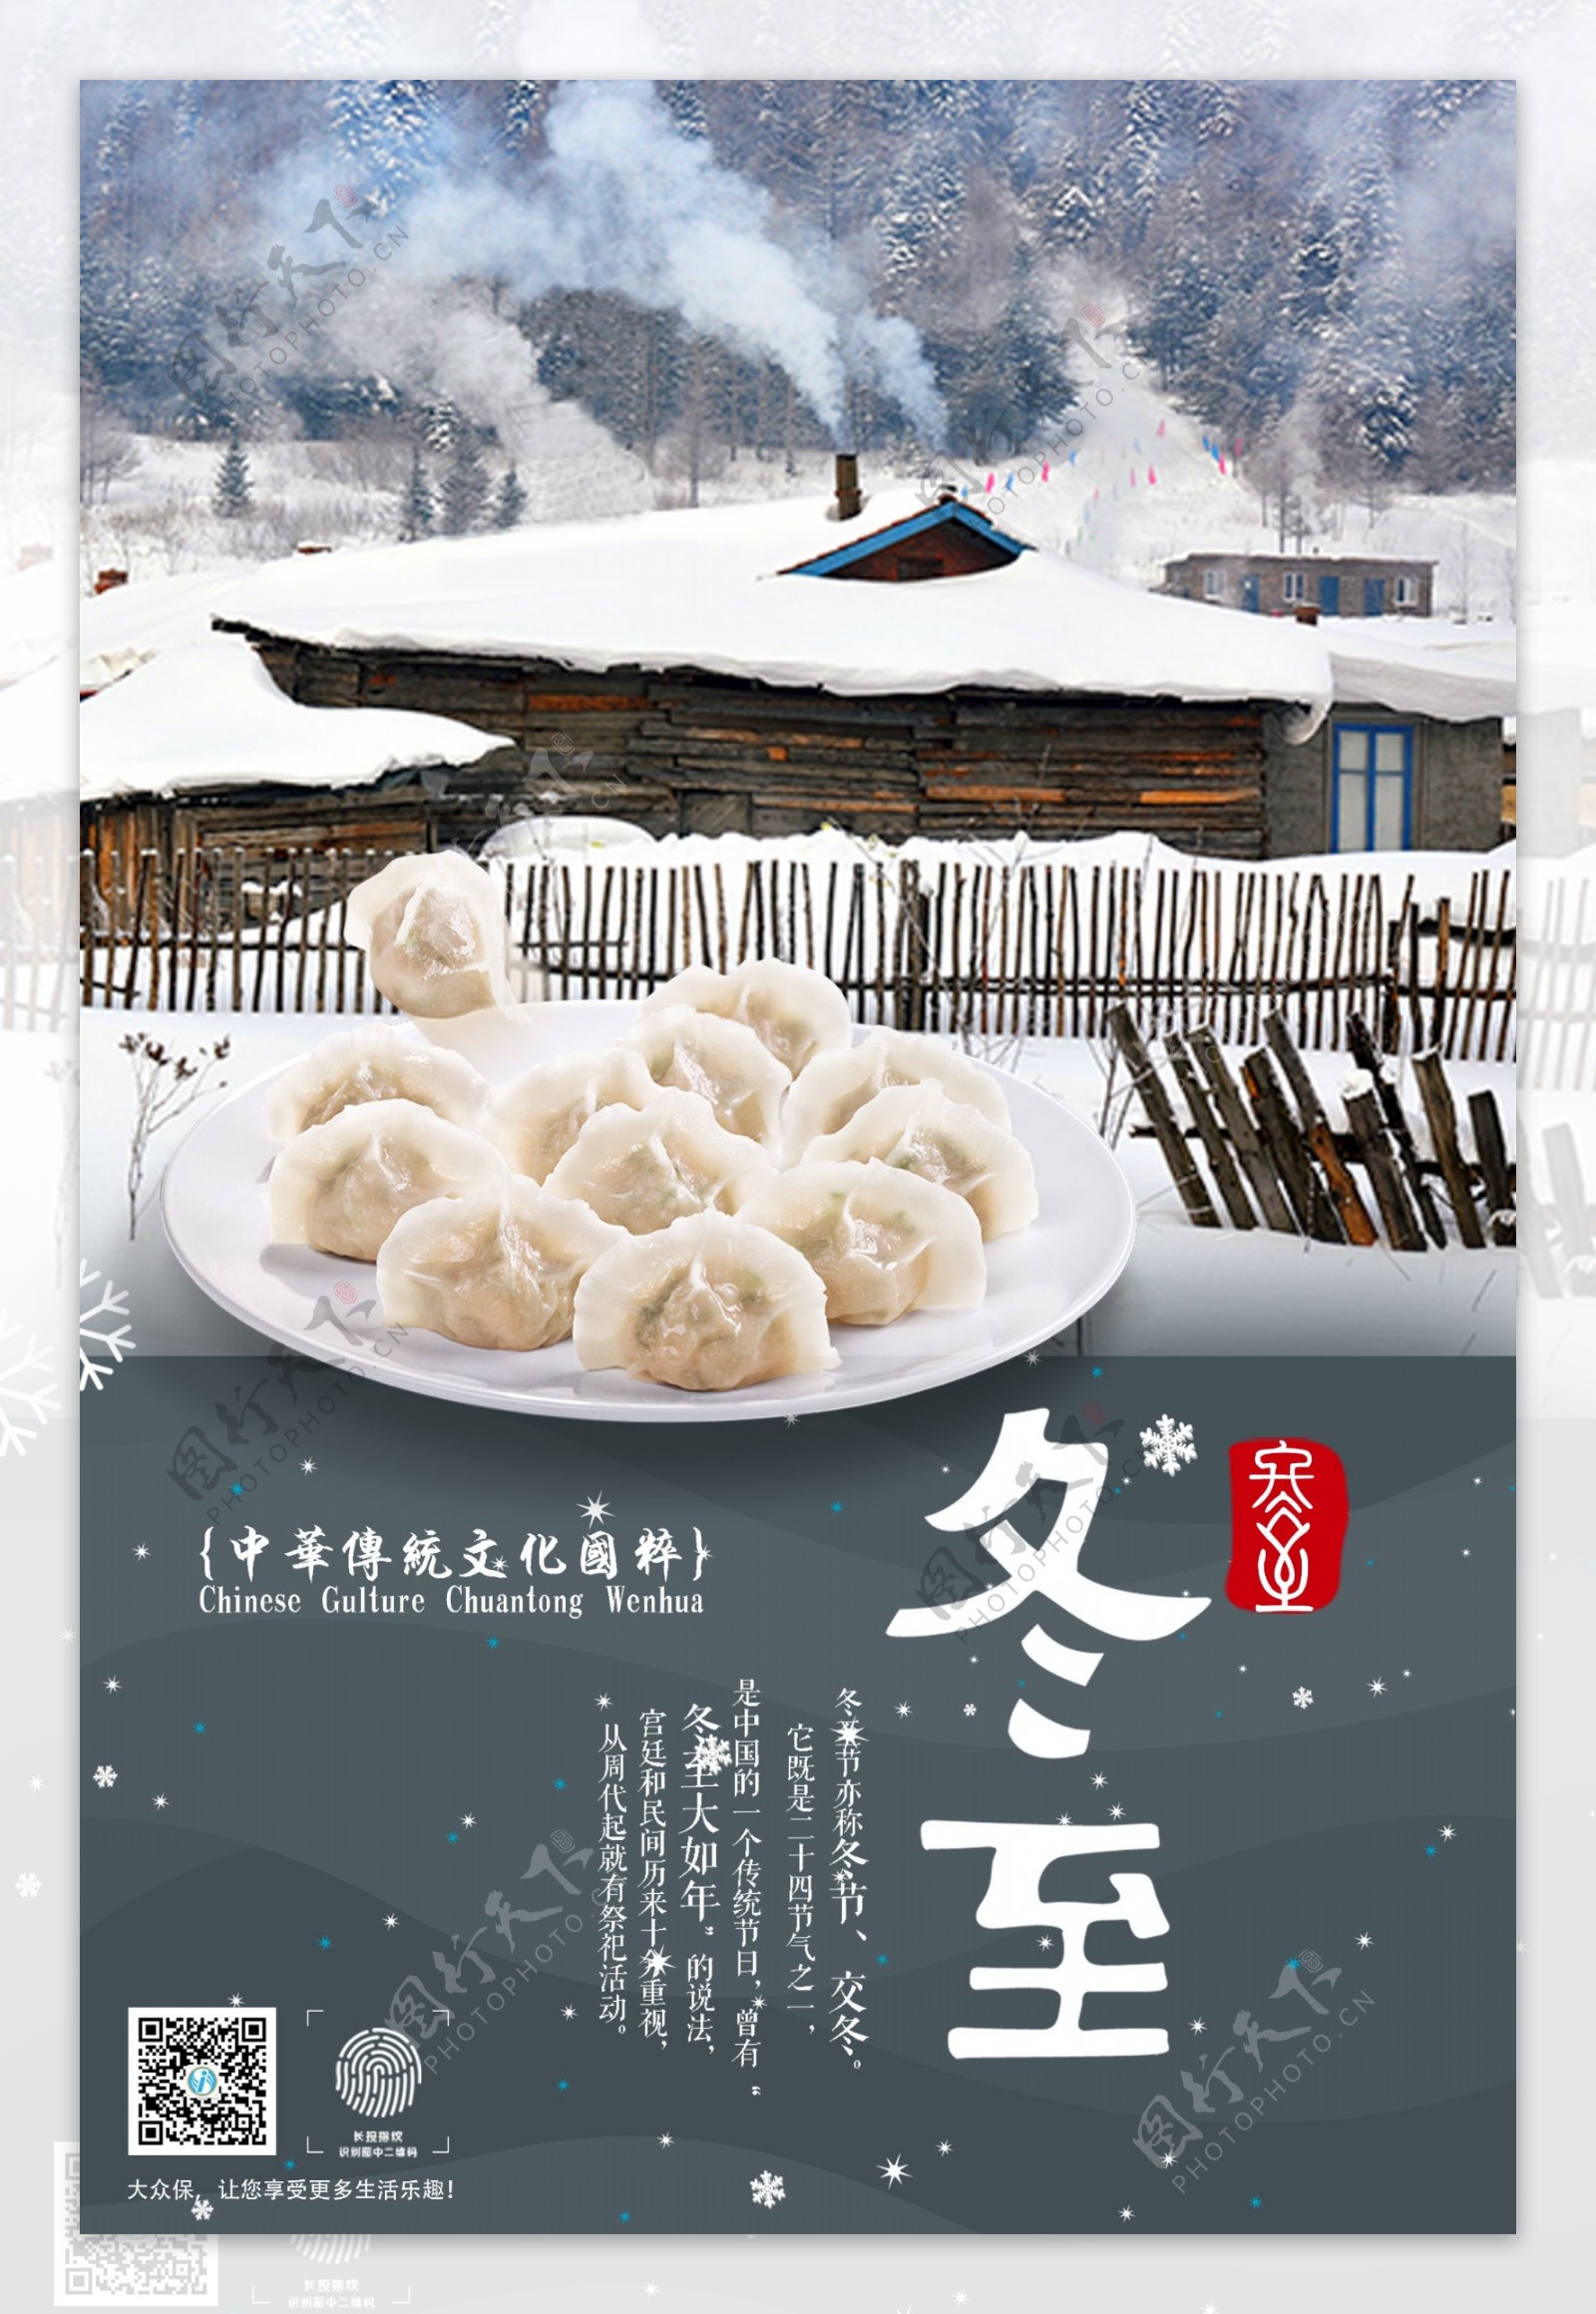 冬至文化节日祝福海报展板设计制作